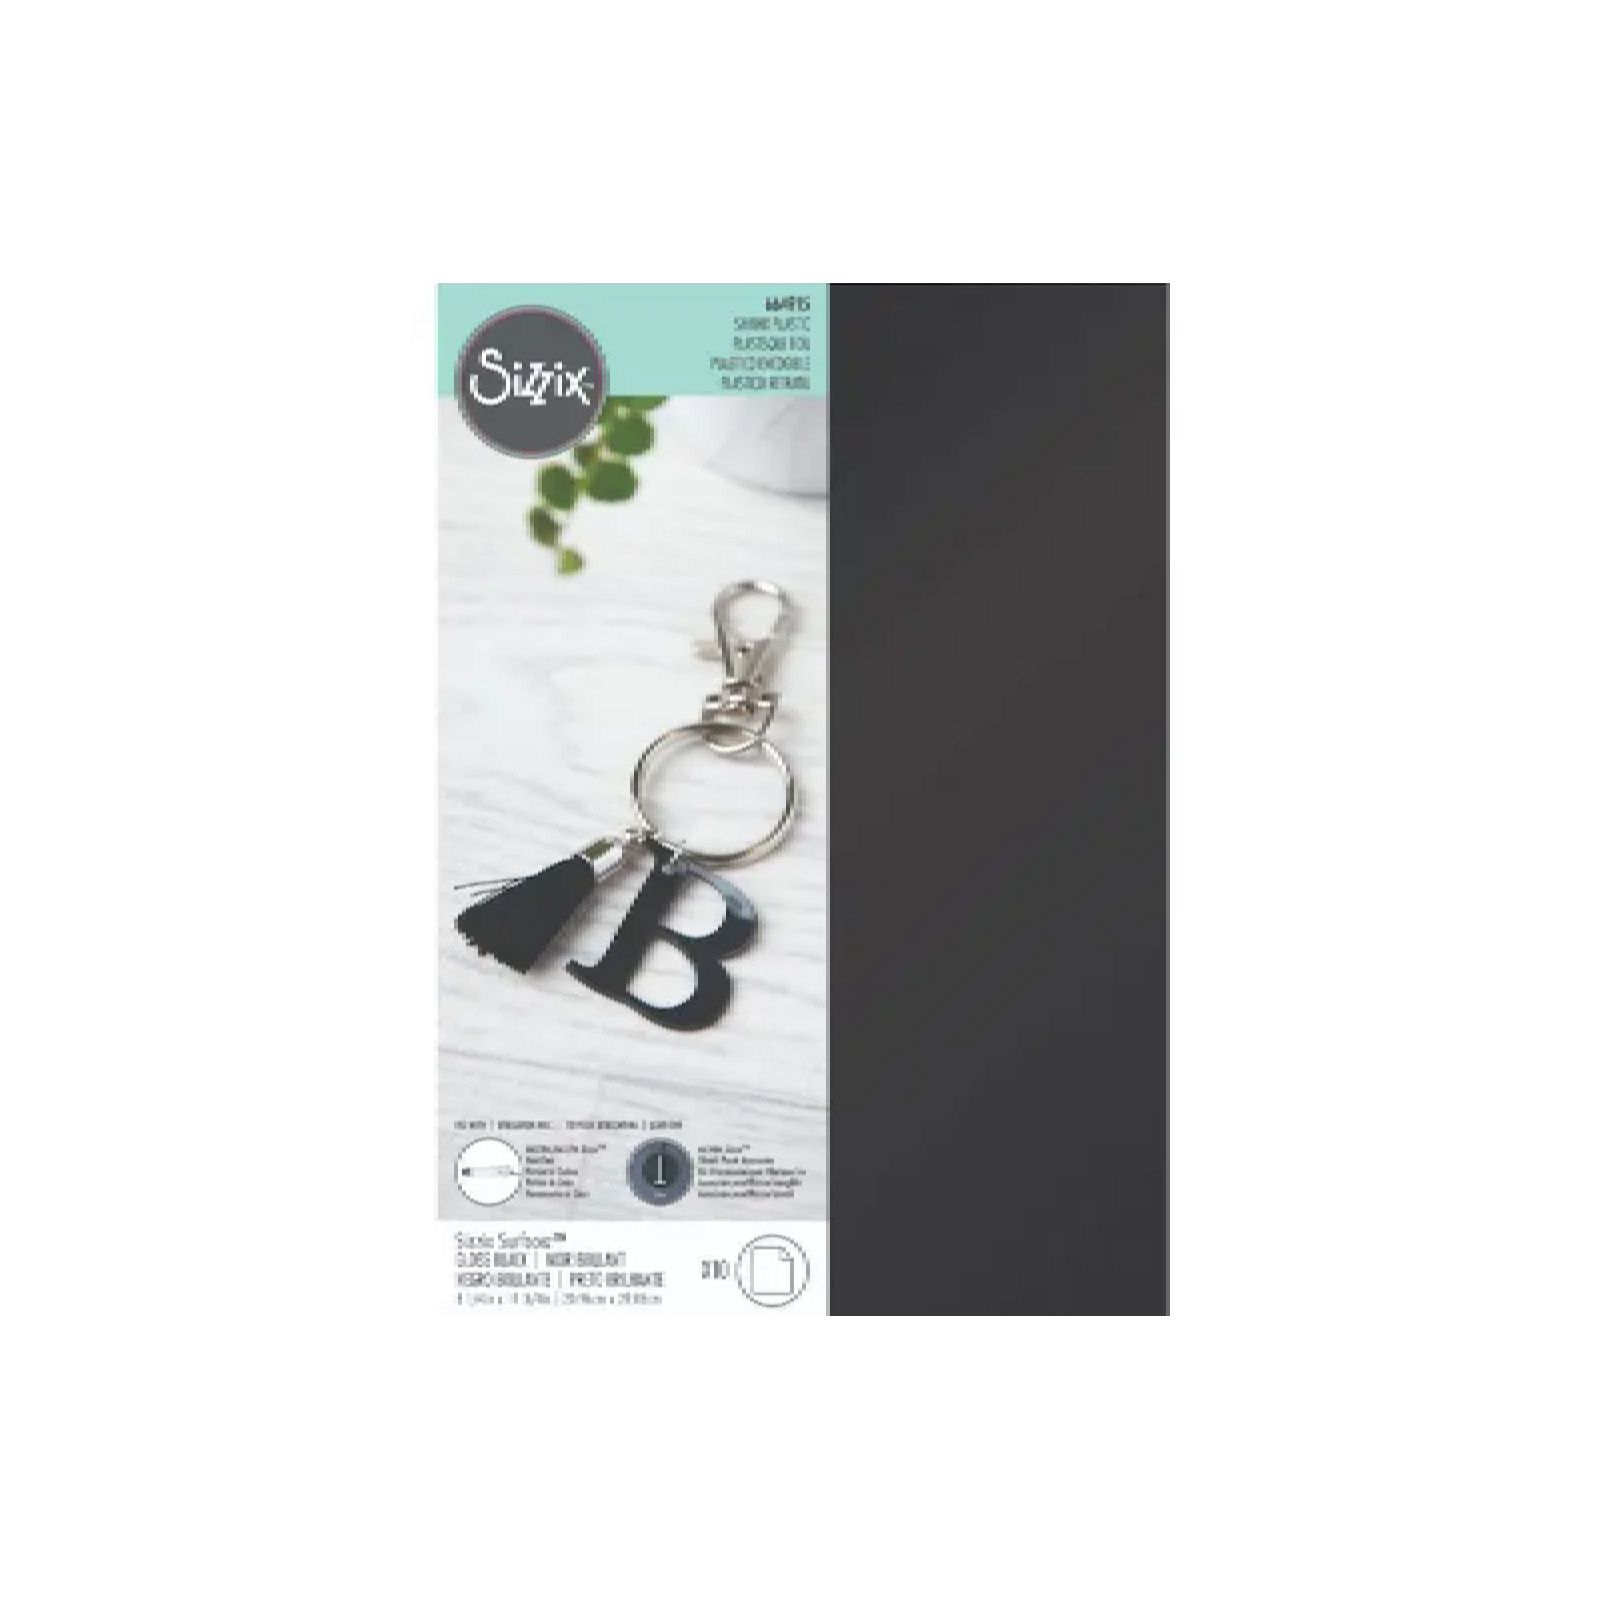 Sizzix • Plastique rétractable Surfacez 10PK (A4 noir brillant)